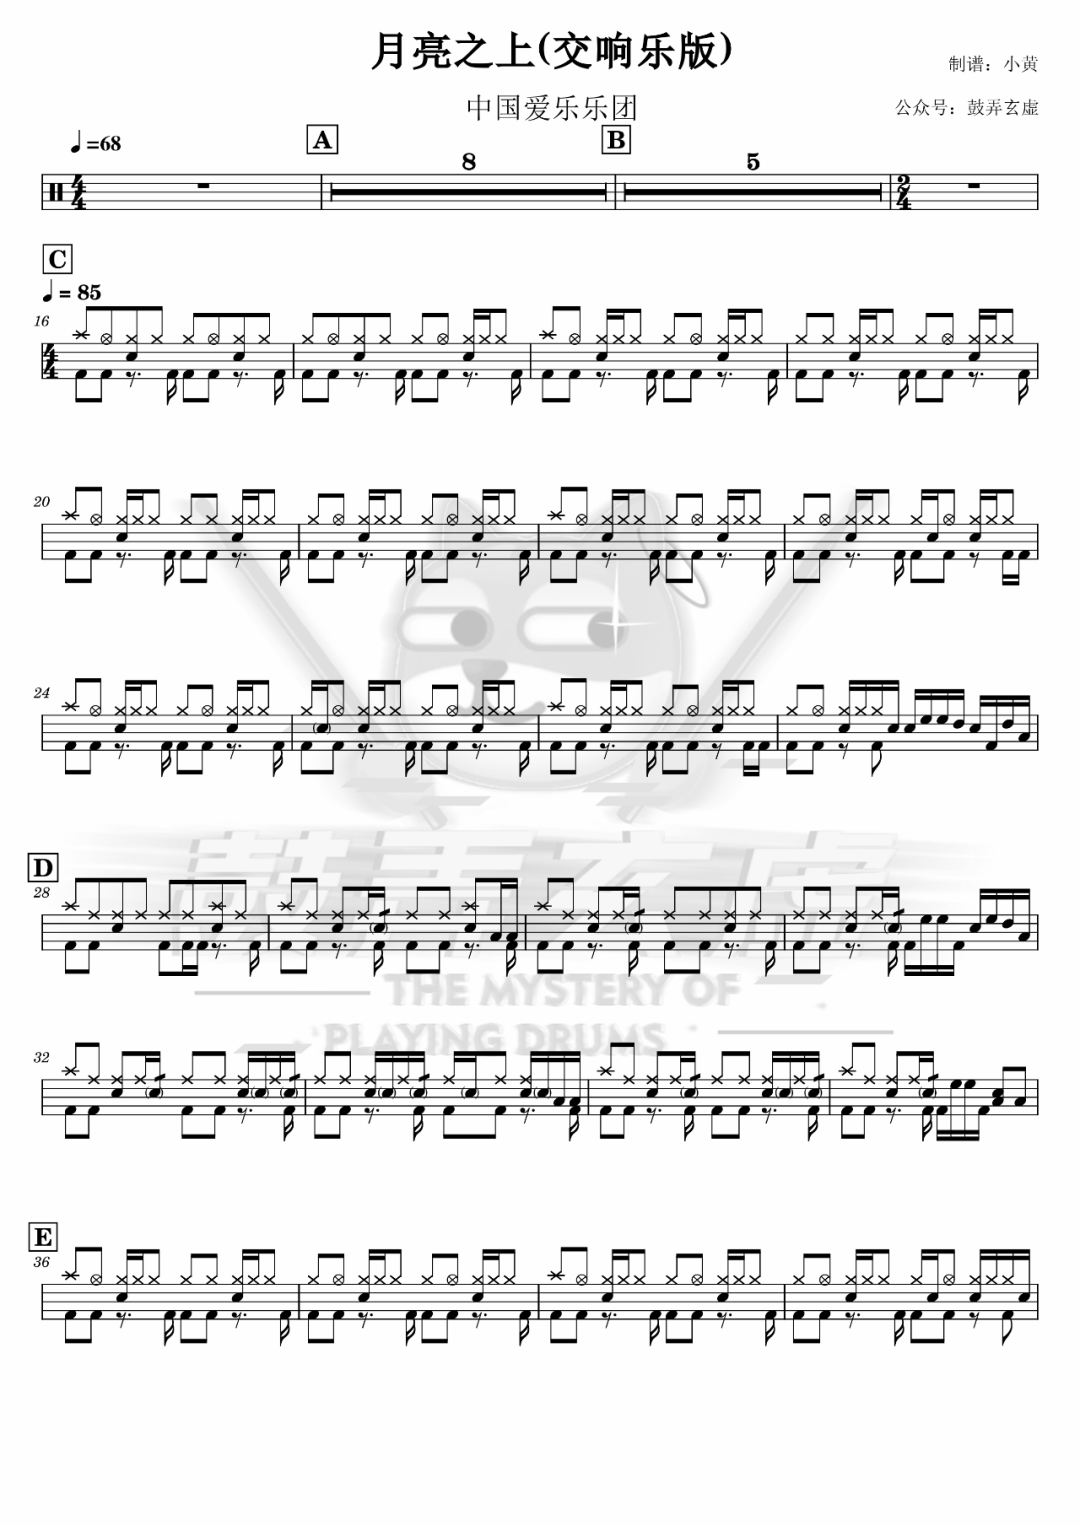 中国爱乐乐团《月亮之上》鼓谱 - 架子鼓谱 - 交响乐版